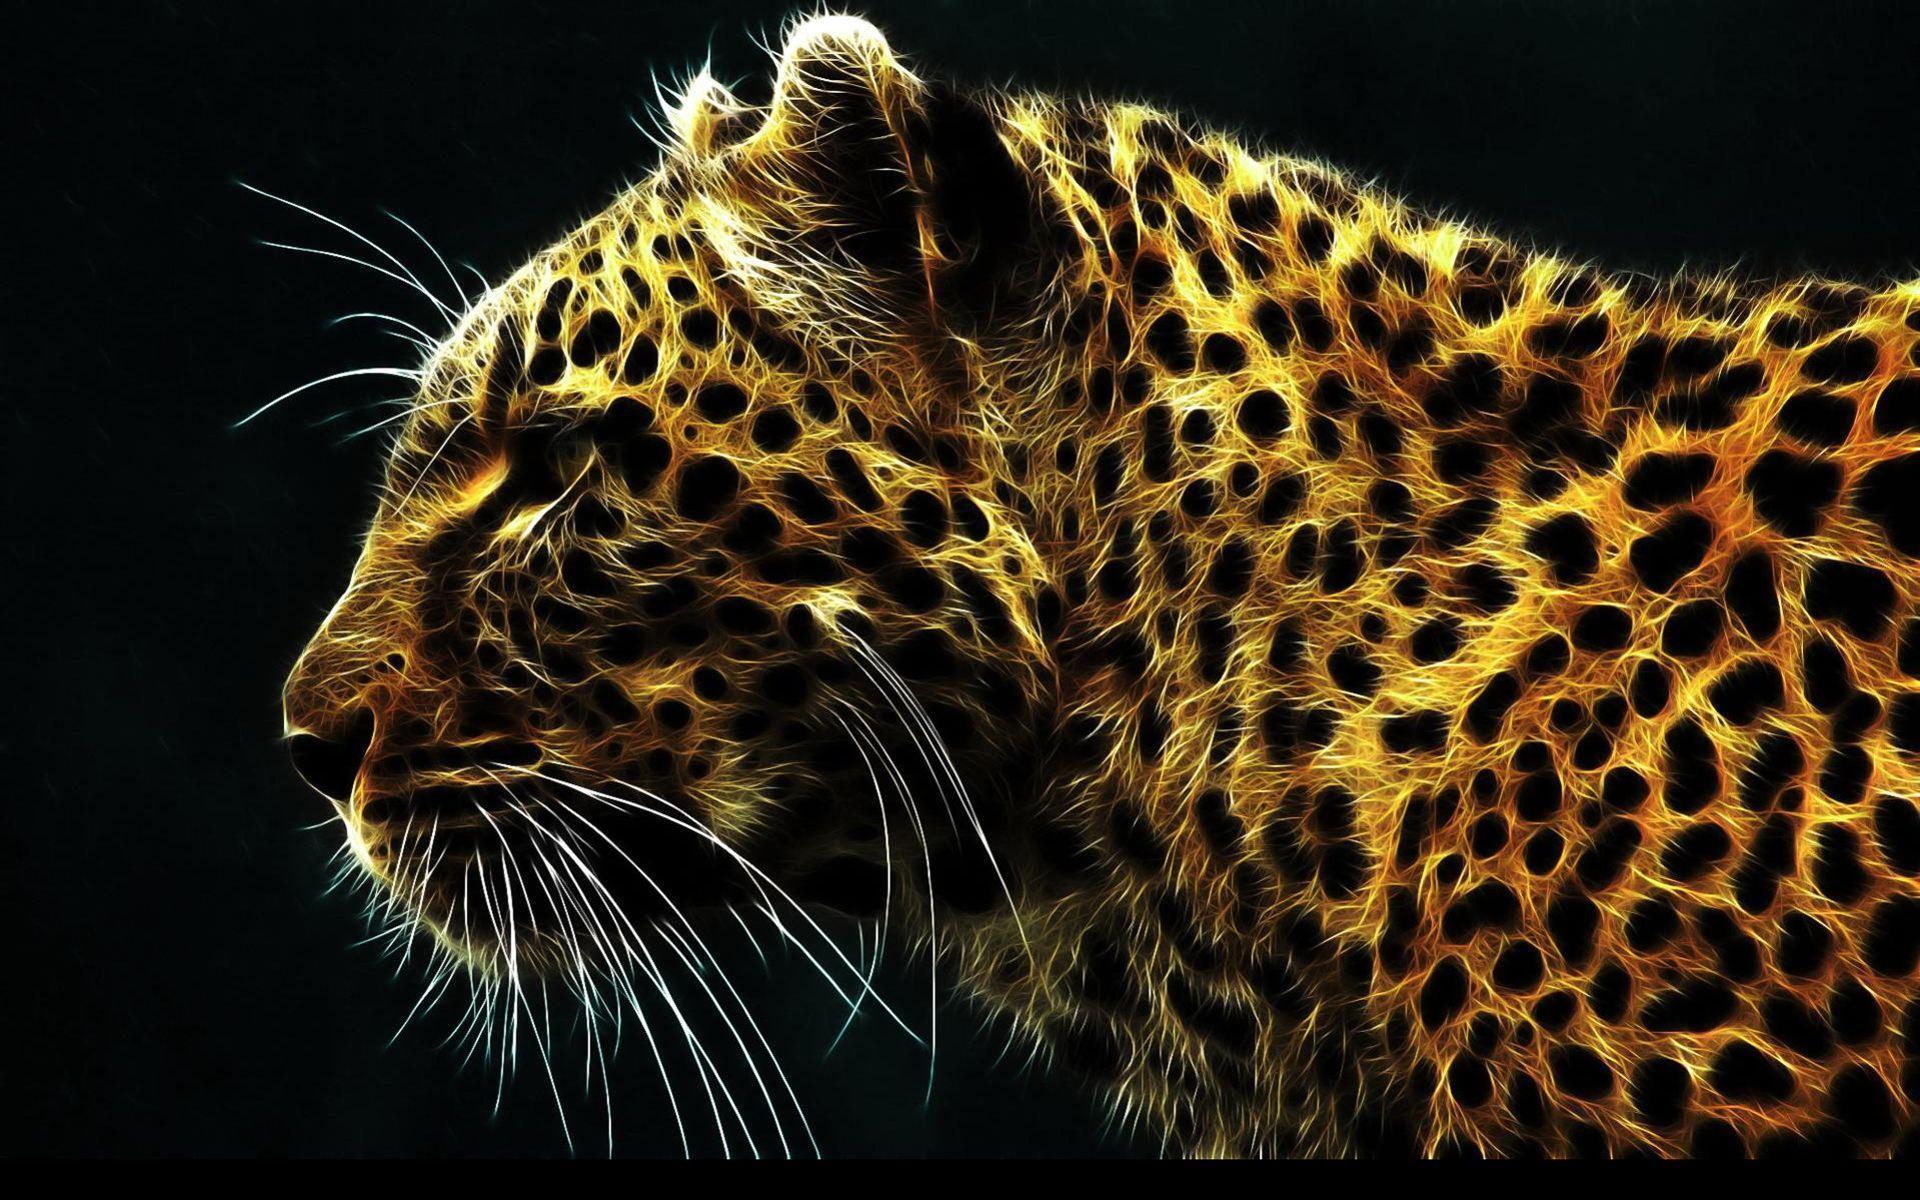 Jaguar Wallpaper, PC Jaguar Pictures, LLGL Backgrounds Collection